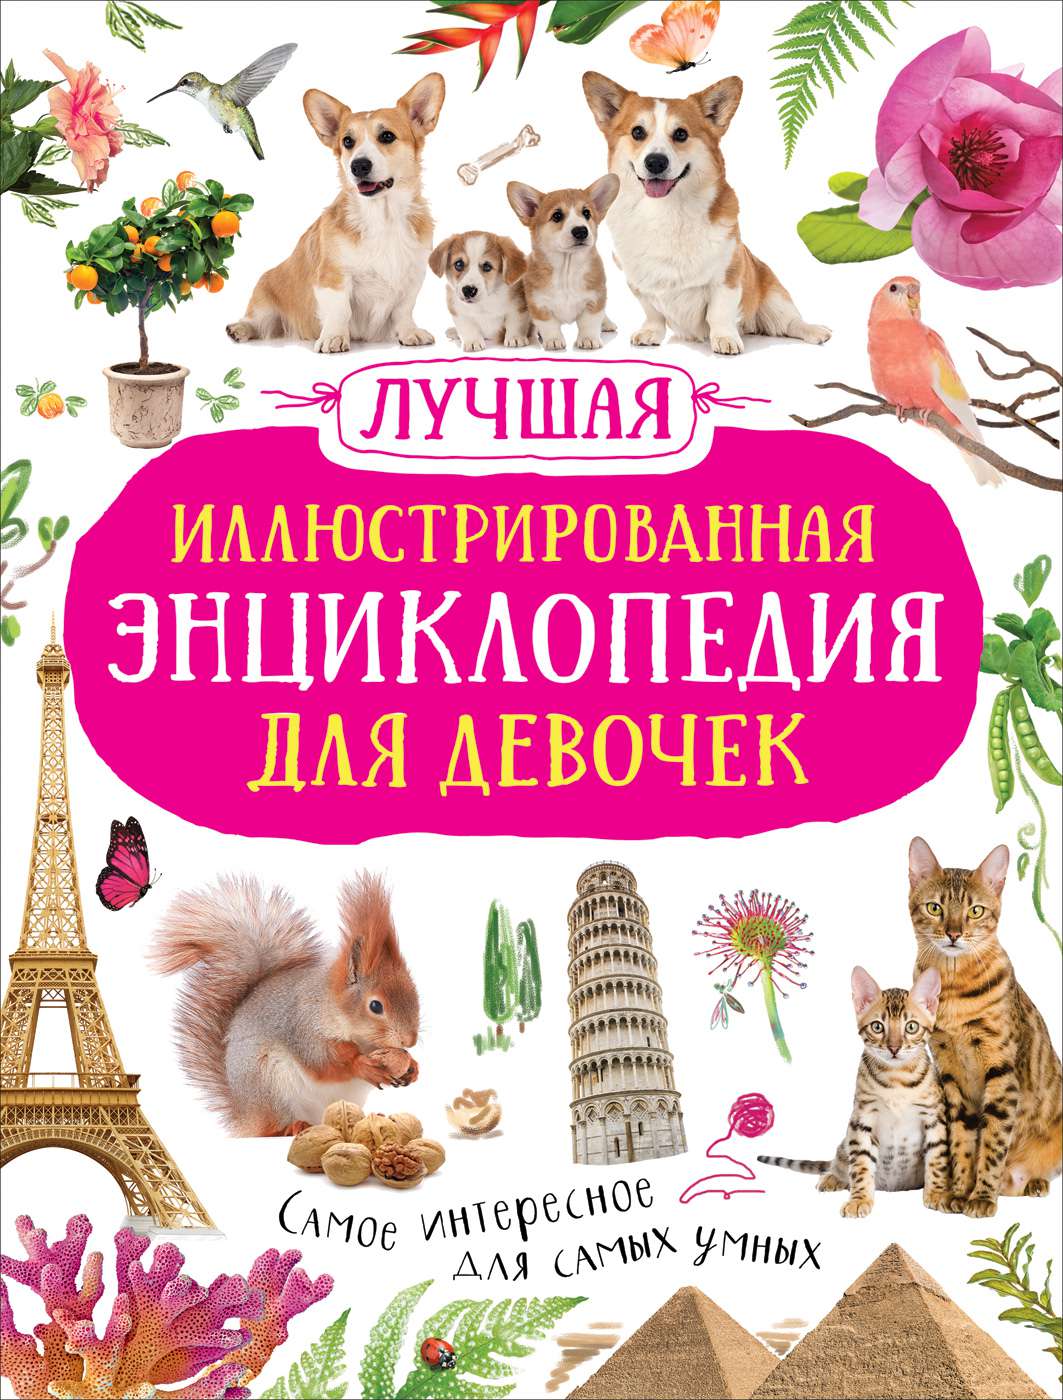 Книга 39081 Лучшая Энциклопедия для девочек Росмэн - Нижнекамск 